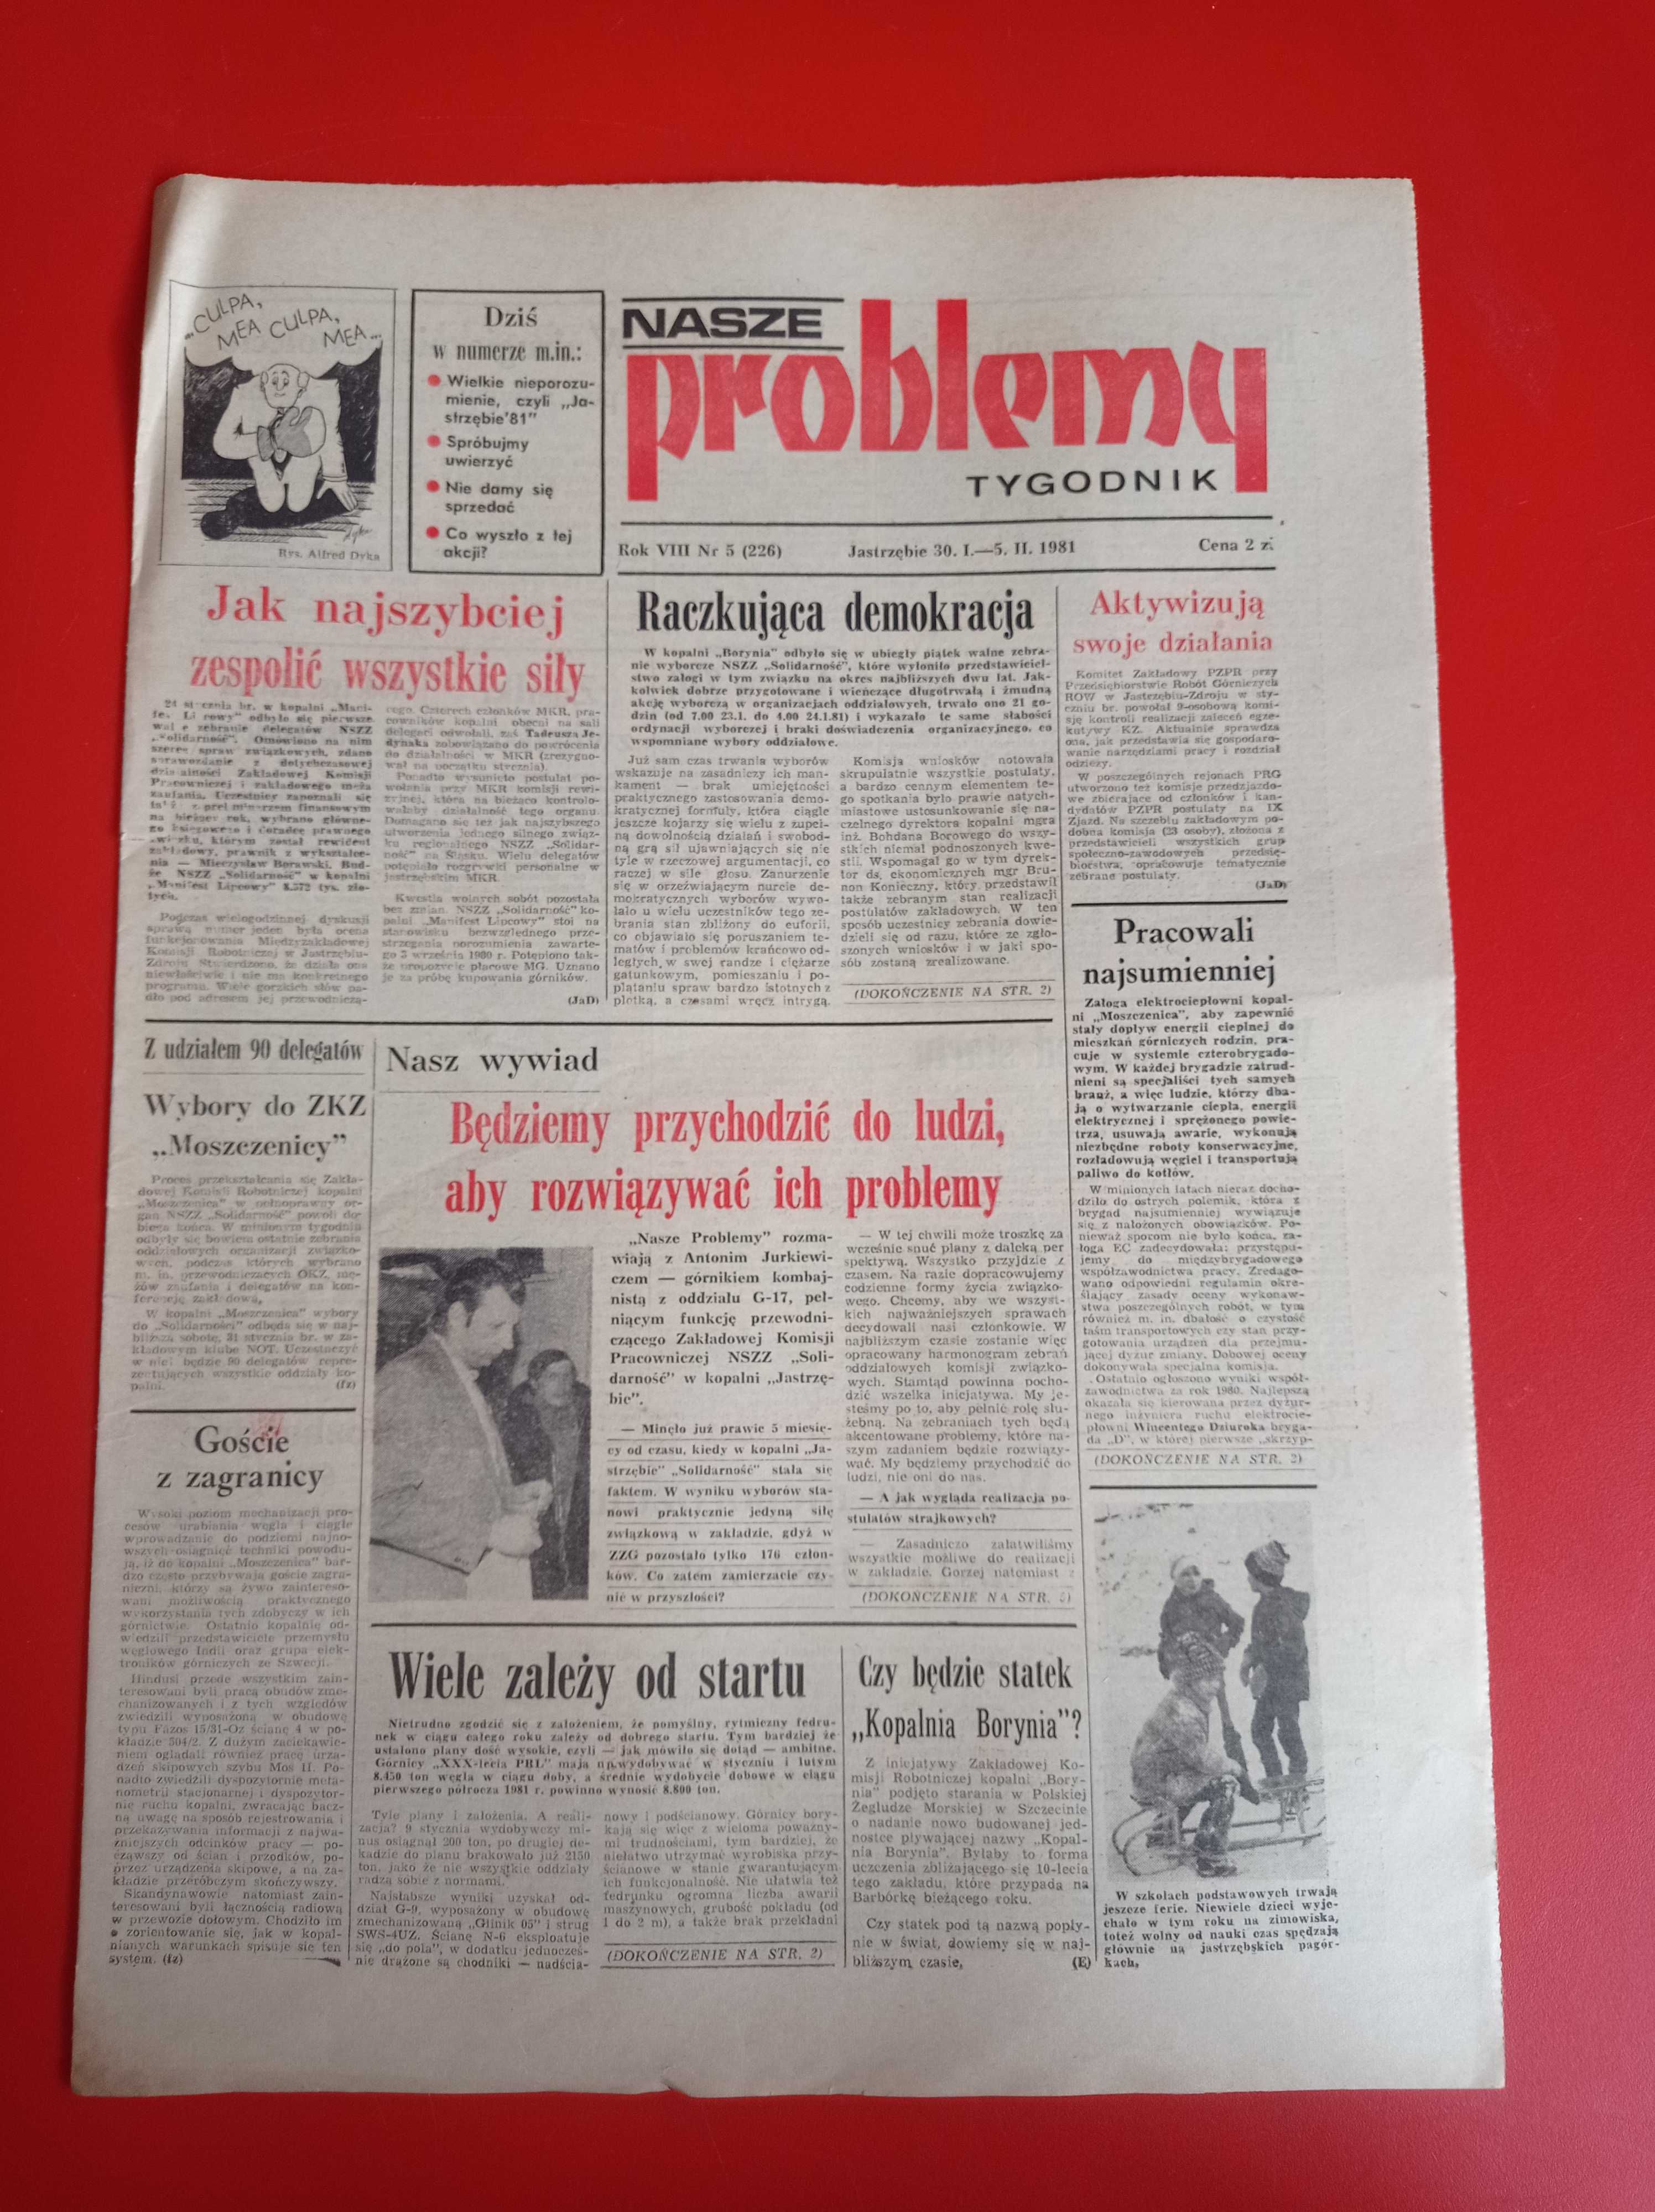 Nasze problemy, Jastrzębie, nr 5, 30 stycznia - 5 lutego 1981